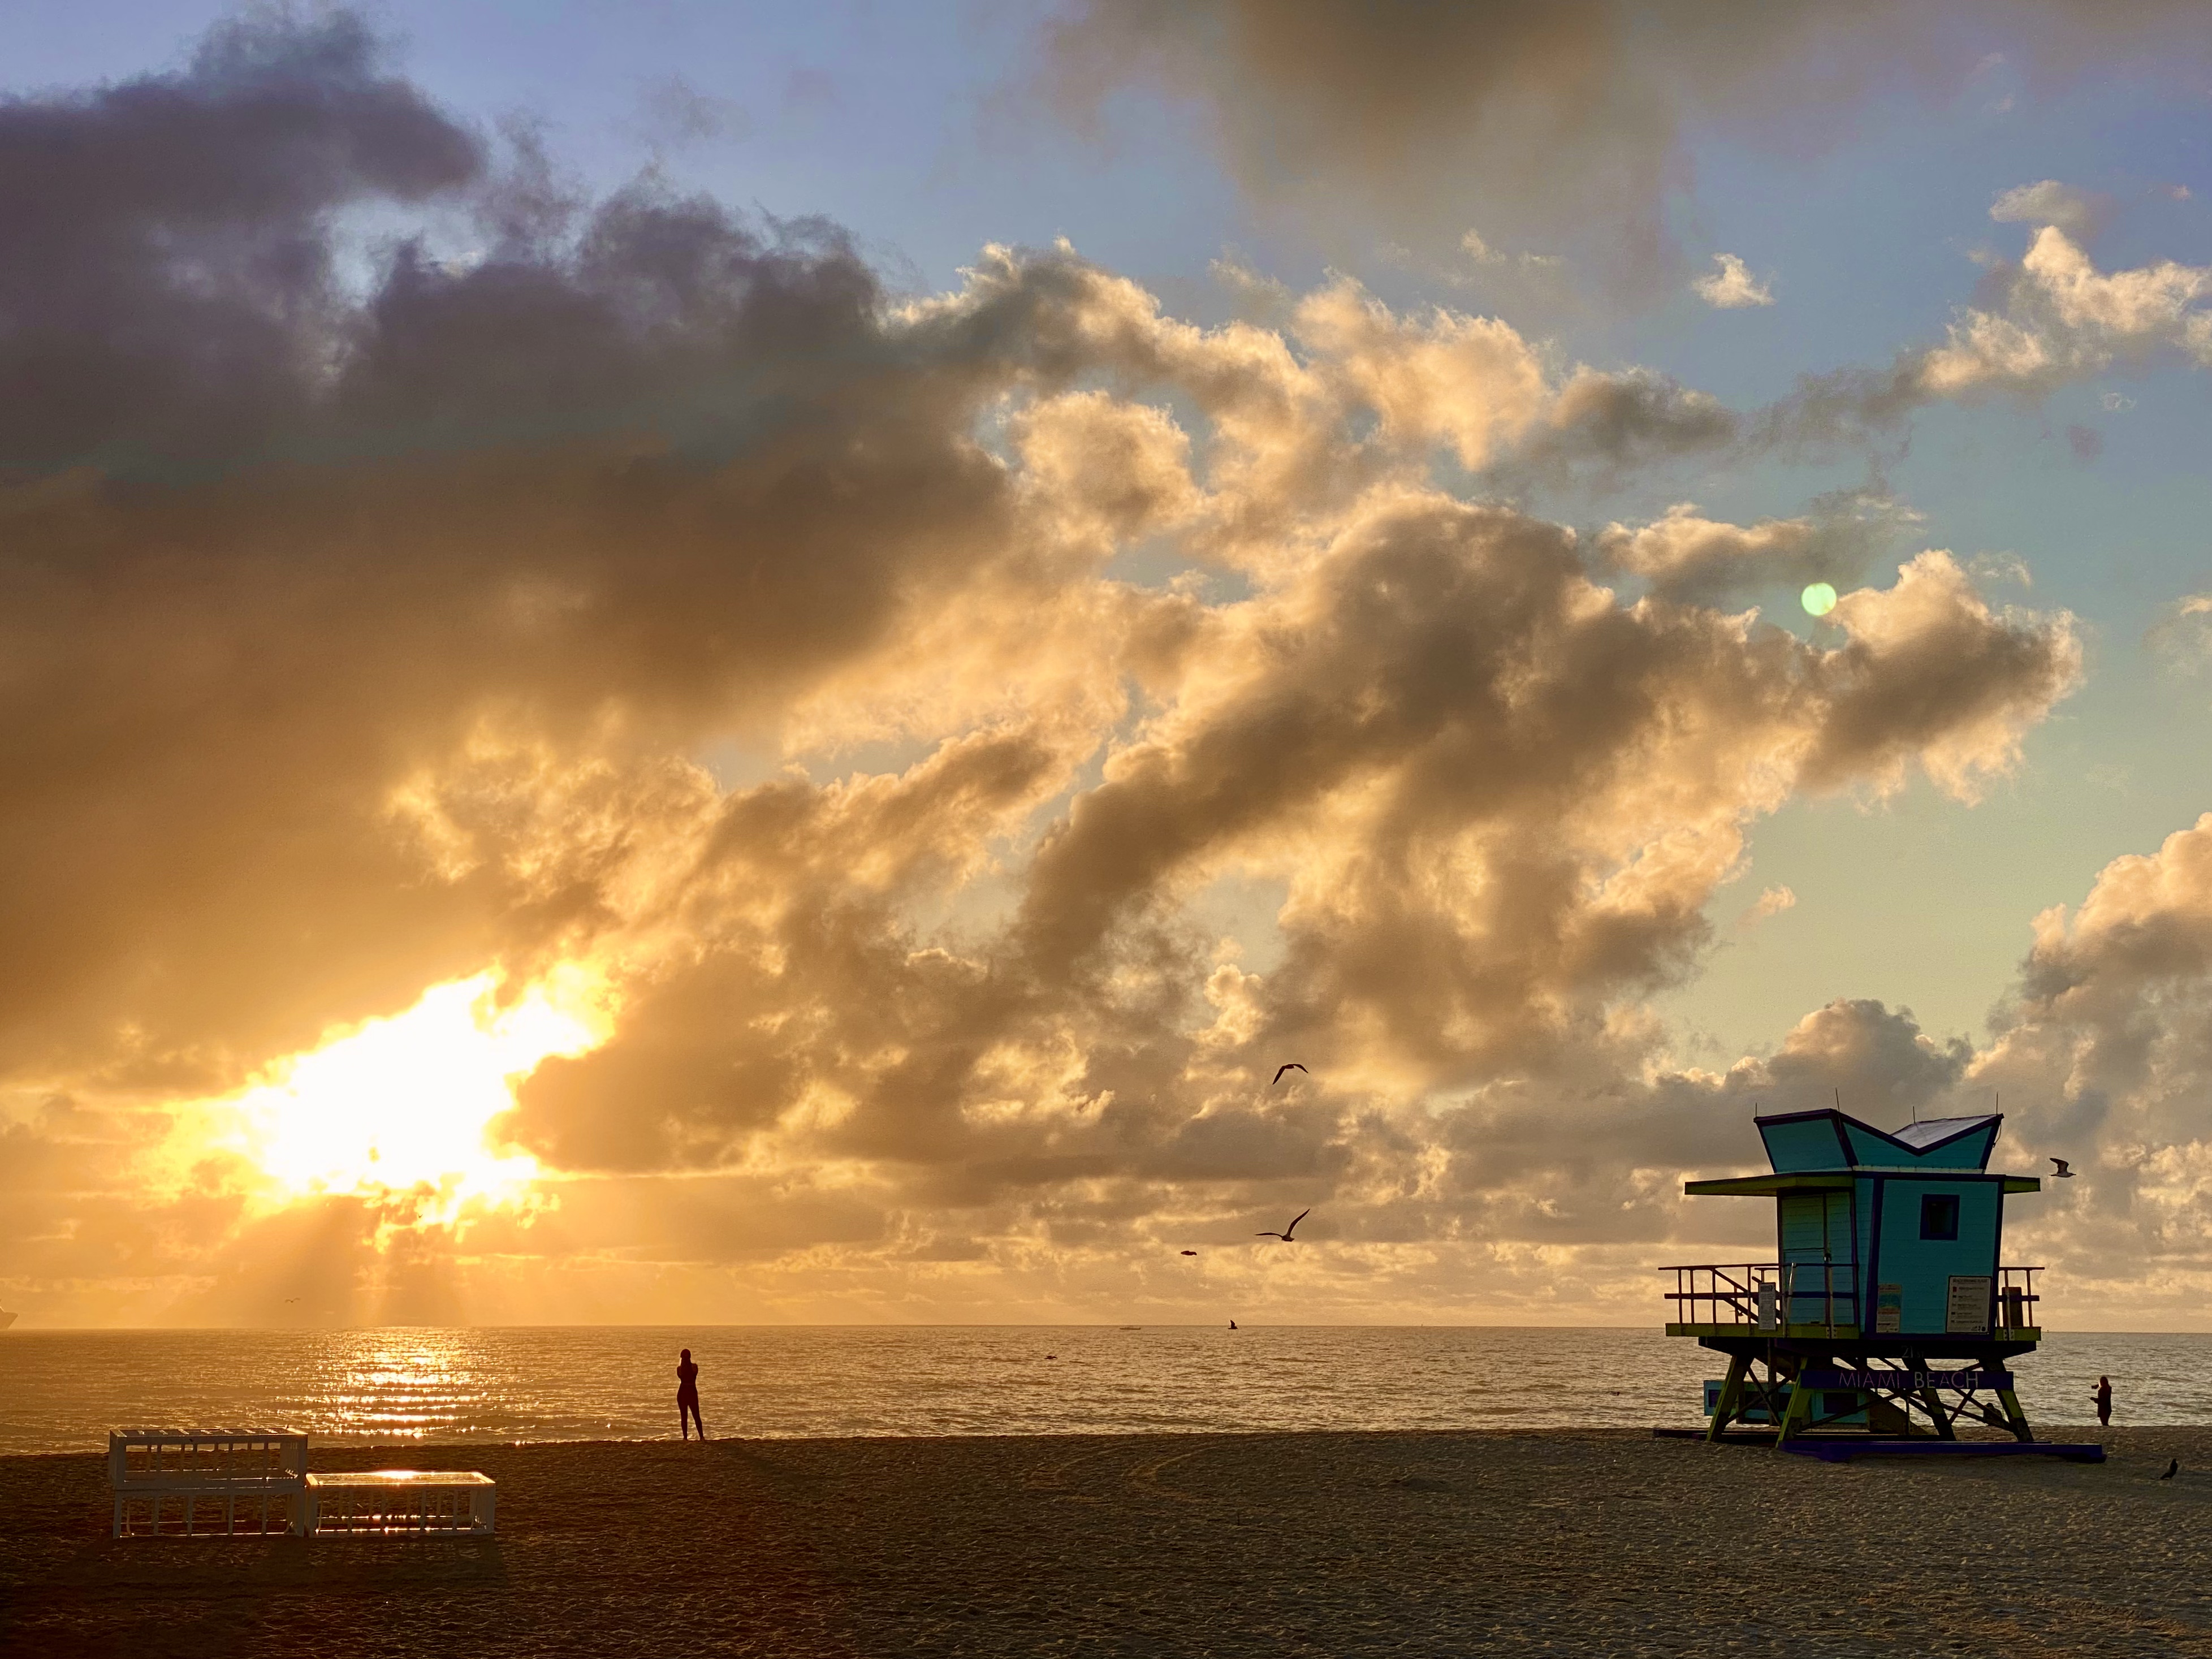 El amanecer en Miami Beach es un momento ideal para hacer ejercicio, como caminar, correr o practicar yoga en la playa. (Foto: Opy Morales)